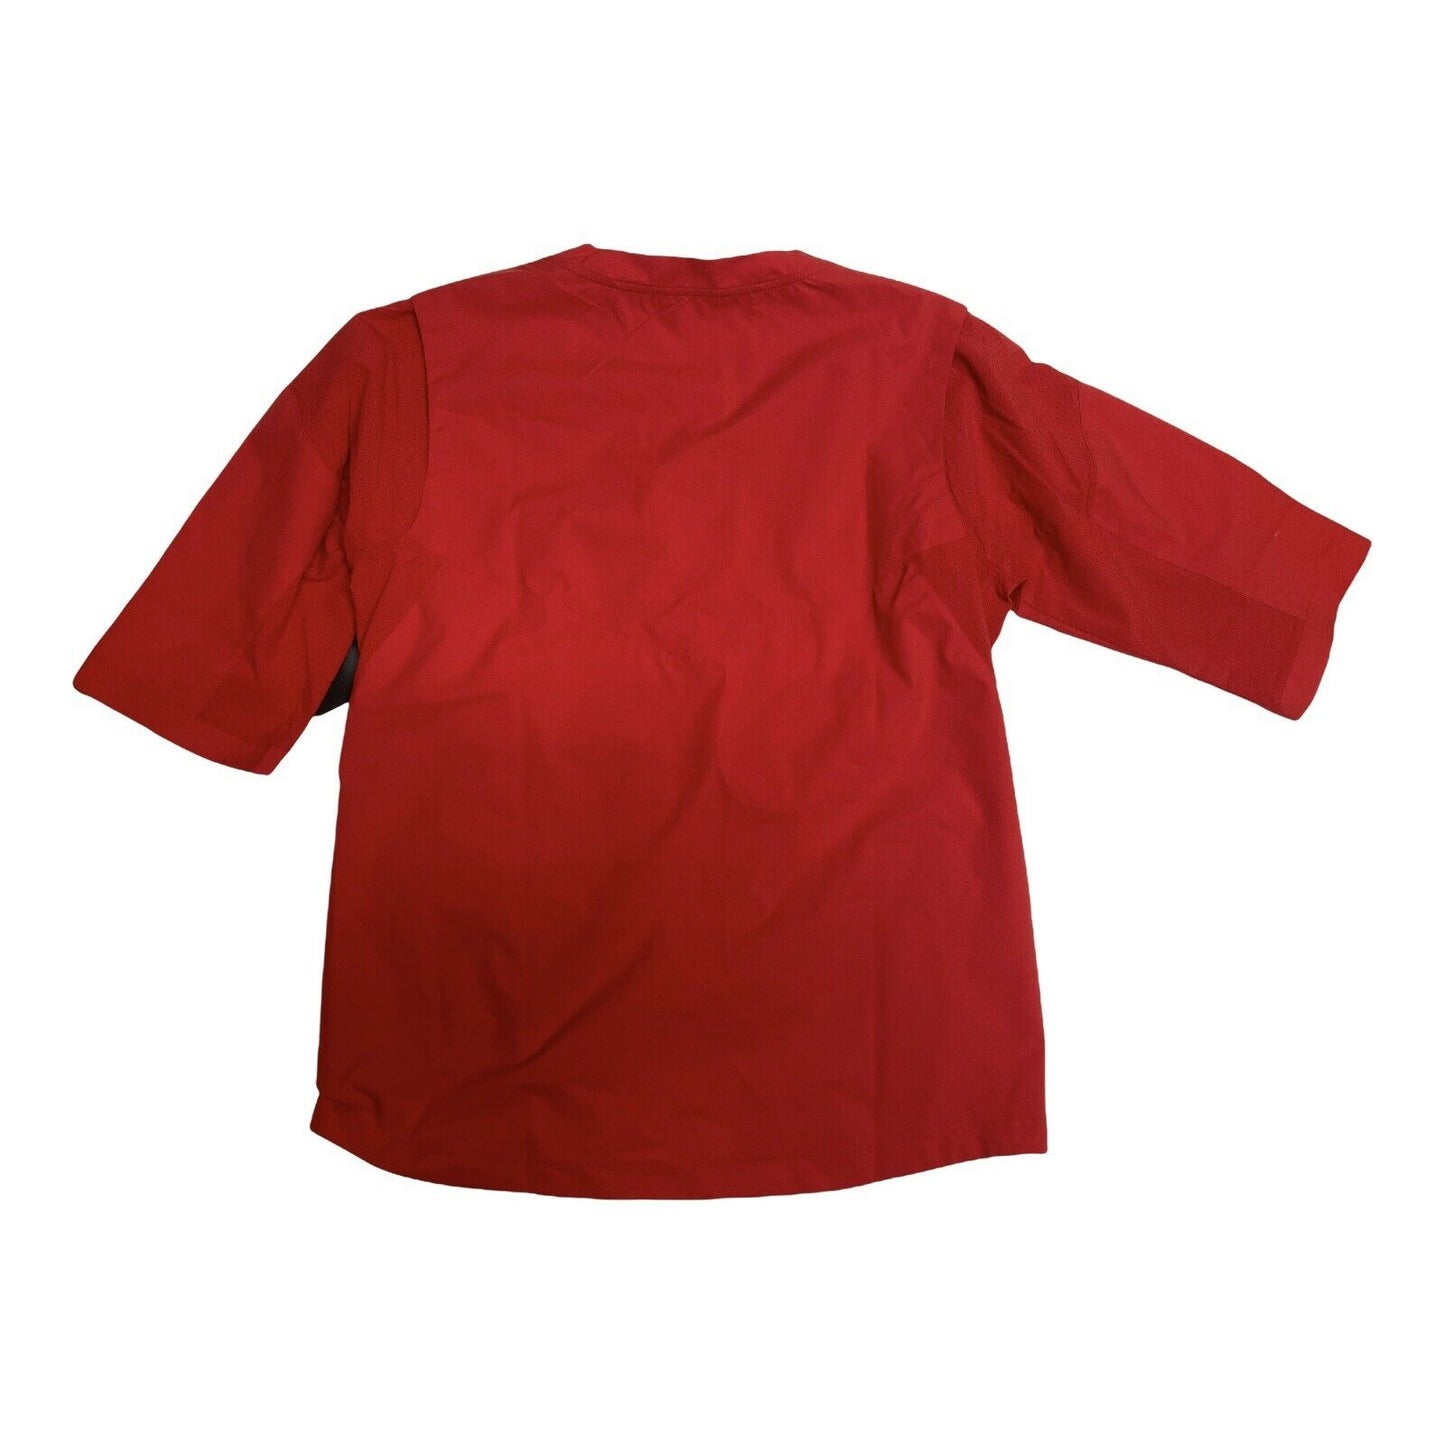 Nike Men's Hot Baseball Jacket Short Sleeve Size Large Team Red 897383-657 NWT